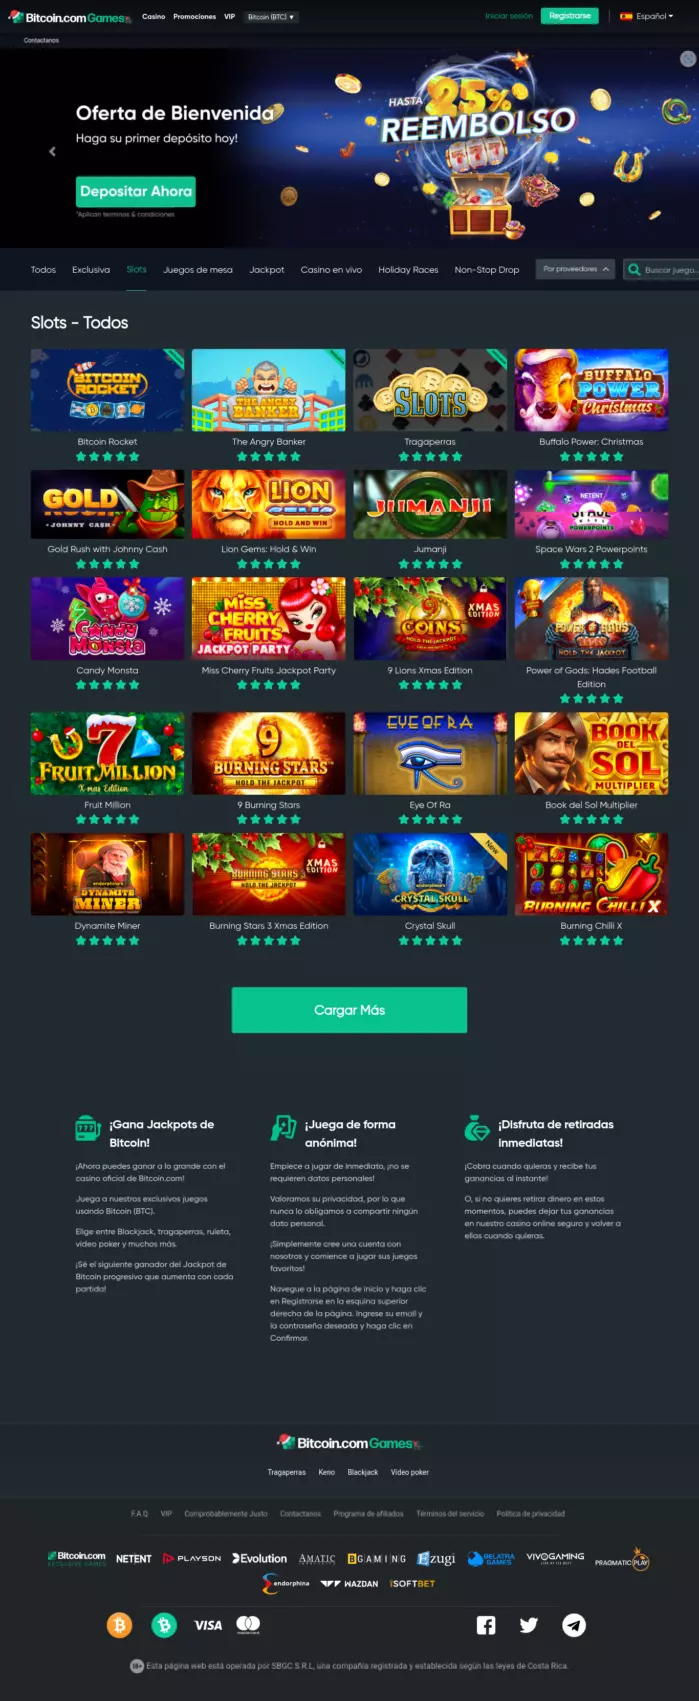 Bitcoin.com Games Casino Reseña